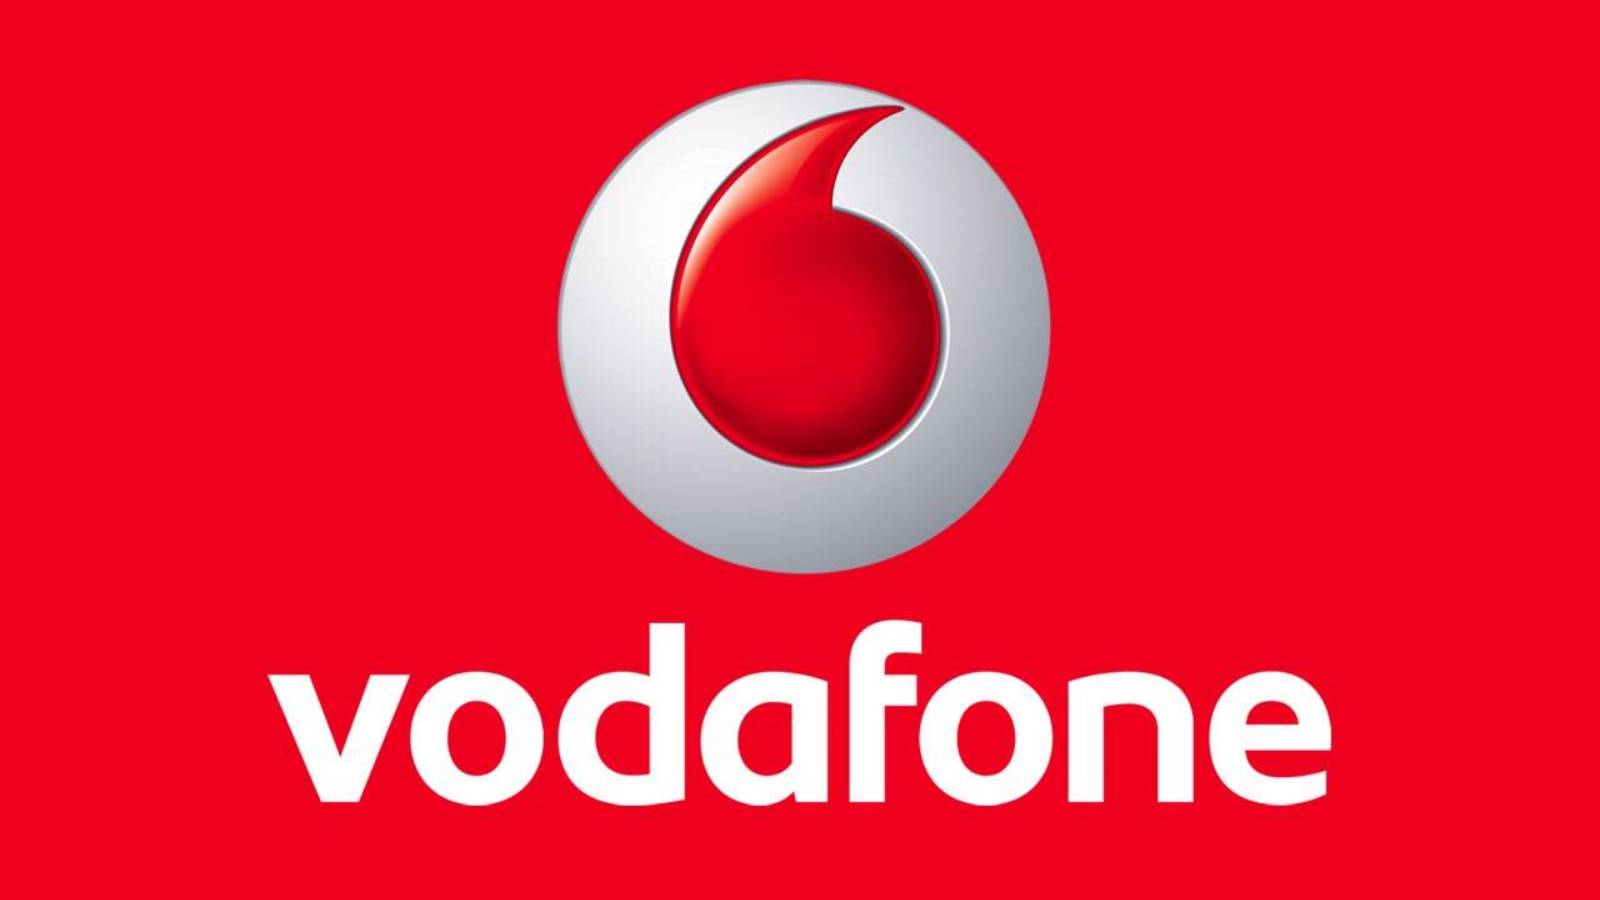 Vodafone garantare